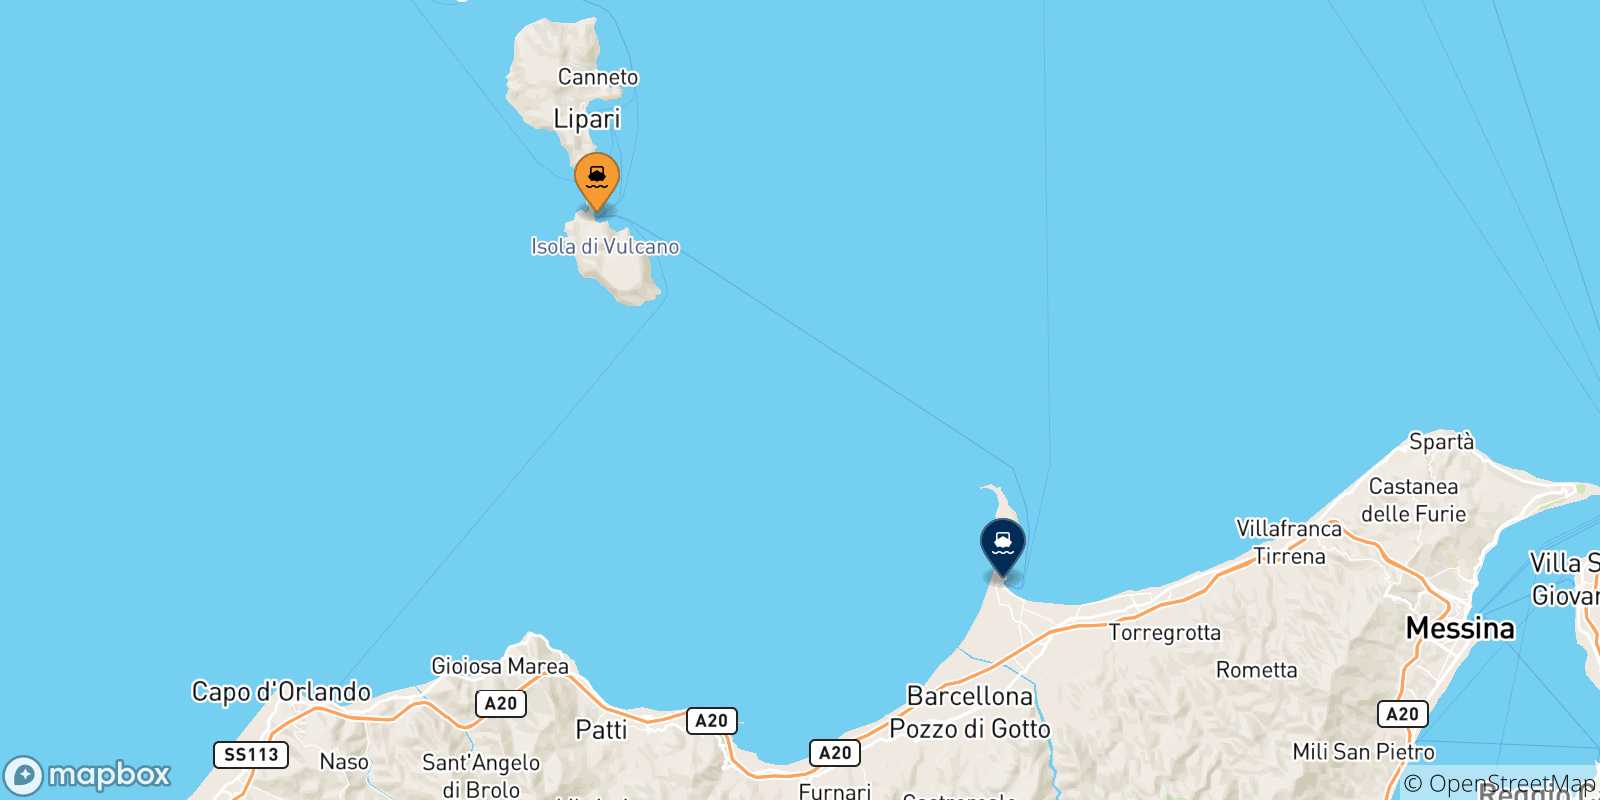 Mappa delle possibili rotte tra Vulcano e la Sicilia